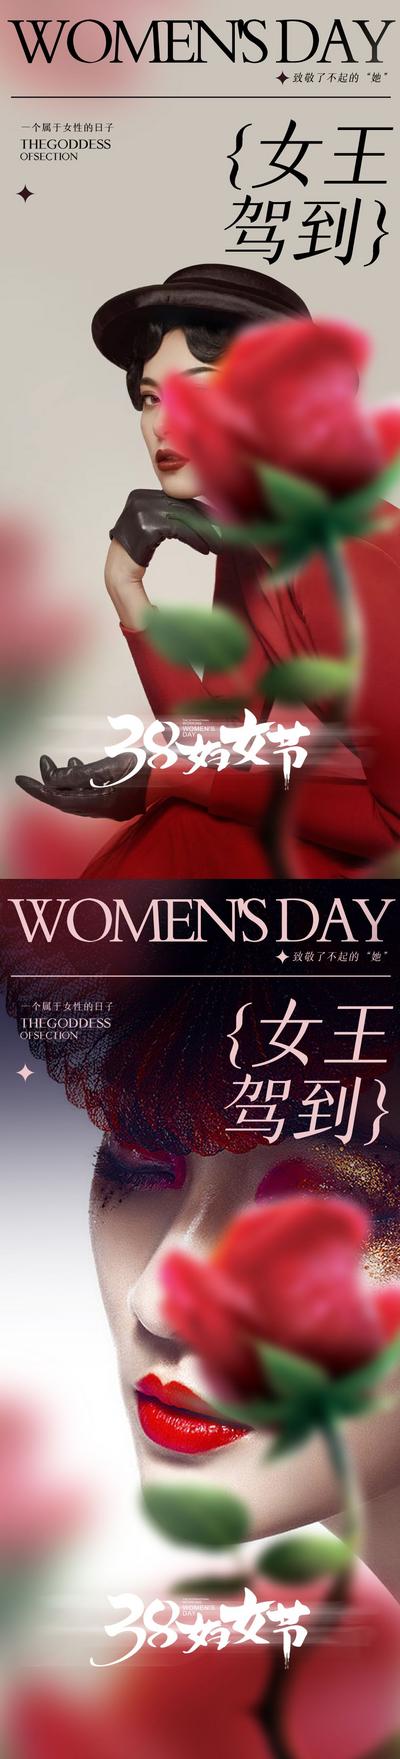 南门网 海报 医美 整形 公历节日   妇女节 女神节 卡项 促销 人物 系列